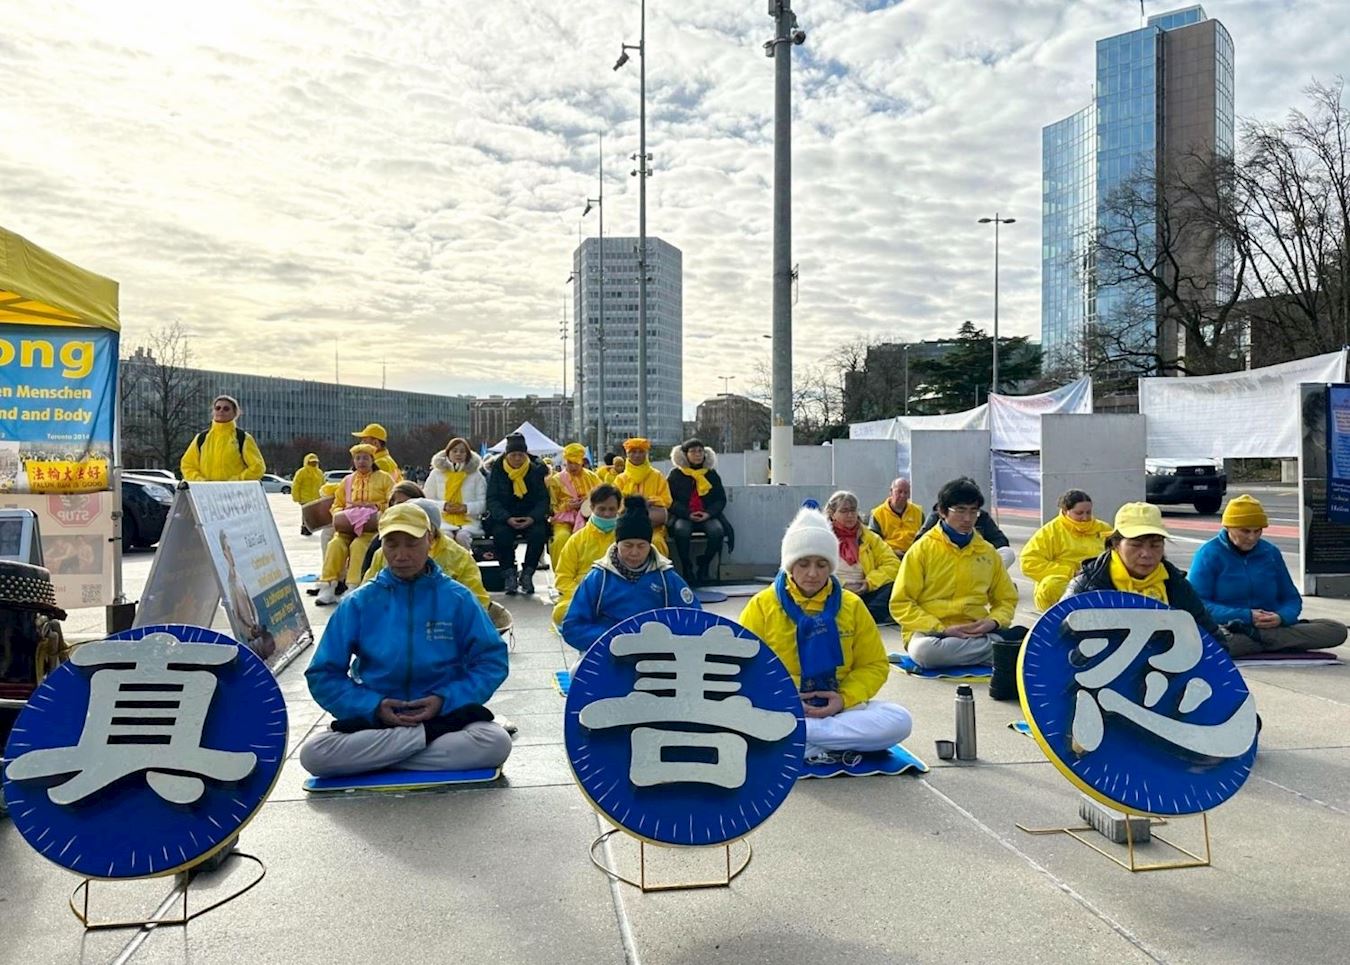 Image for article İsviçre, Cenevre: BM İnsan Hakları Konseyi Toplantısında Falun Gong Zulmüne Son Verilmesi Çağrısında Bulunuldu